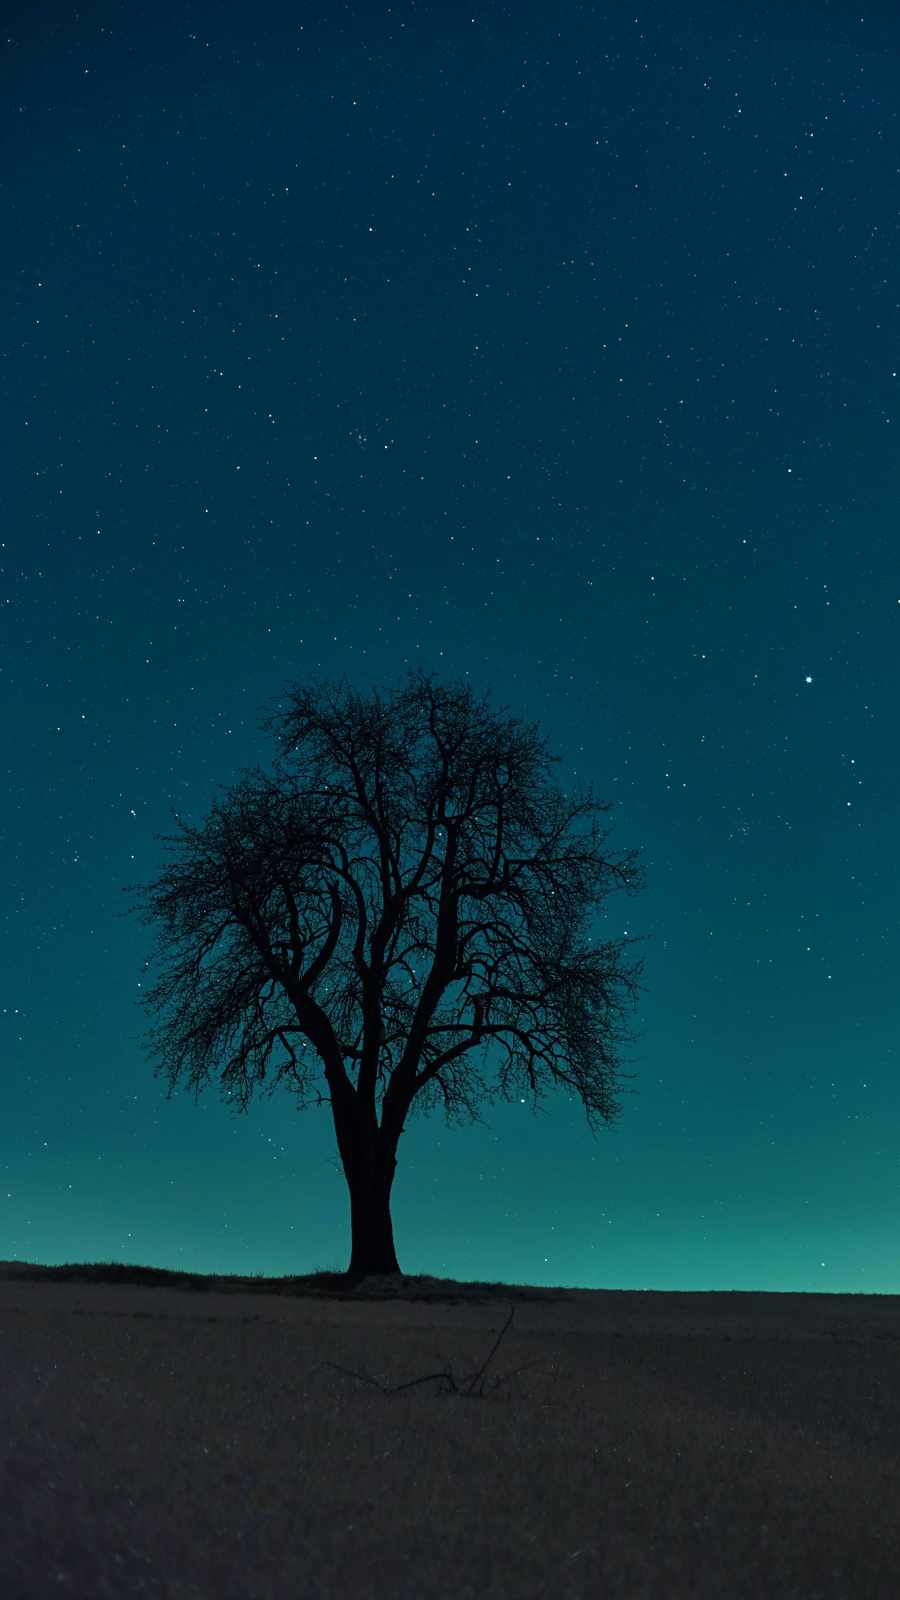 تصویر جالب و دیدنی از درخت تنها در شب با آسمانی پر از ستاره 